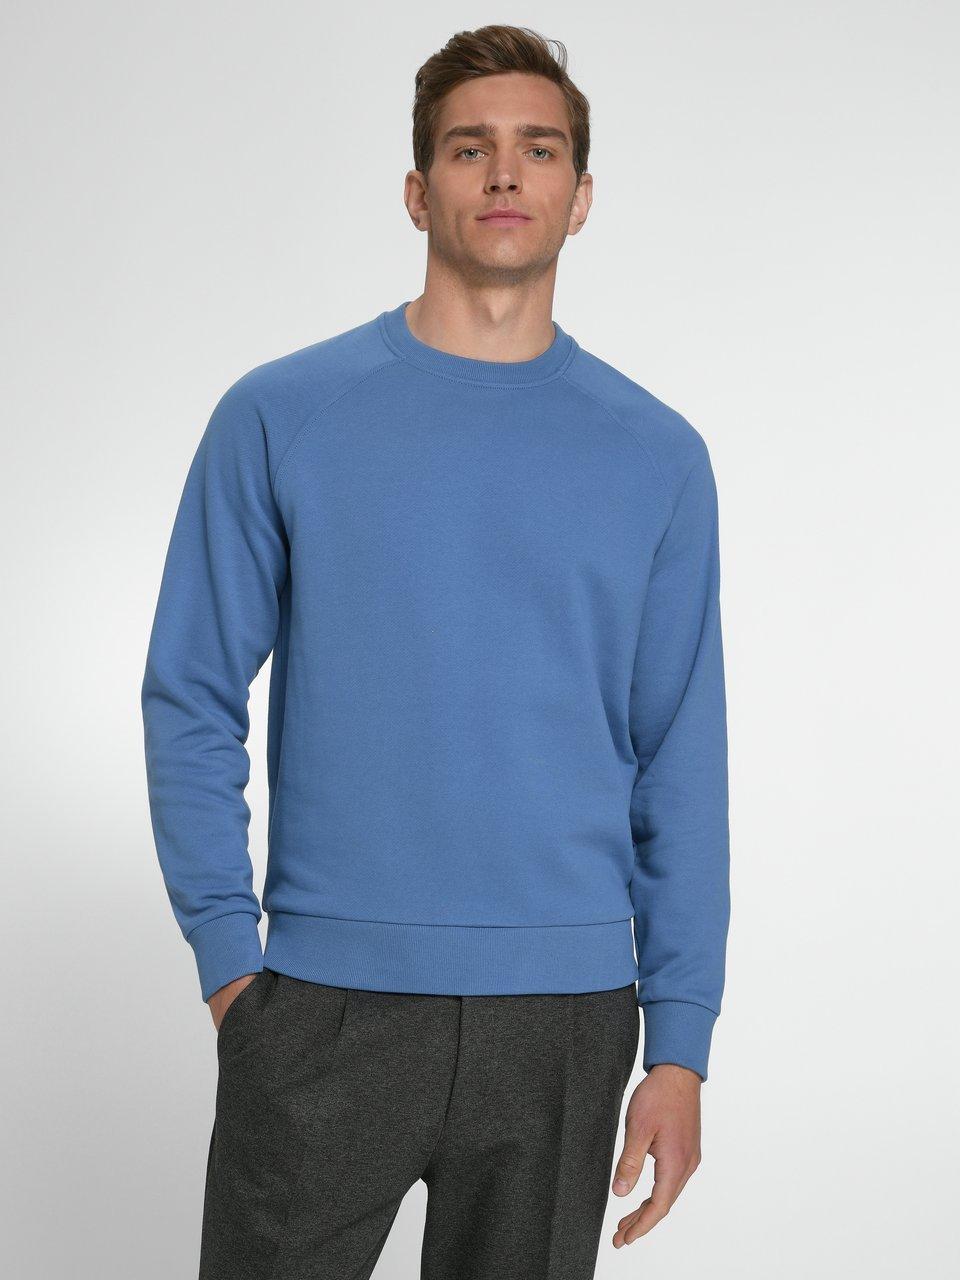 Louis Sayn - Sweatshirt van 100% katoen met raglanmouwen